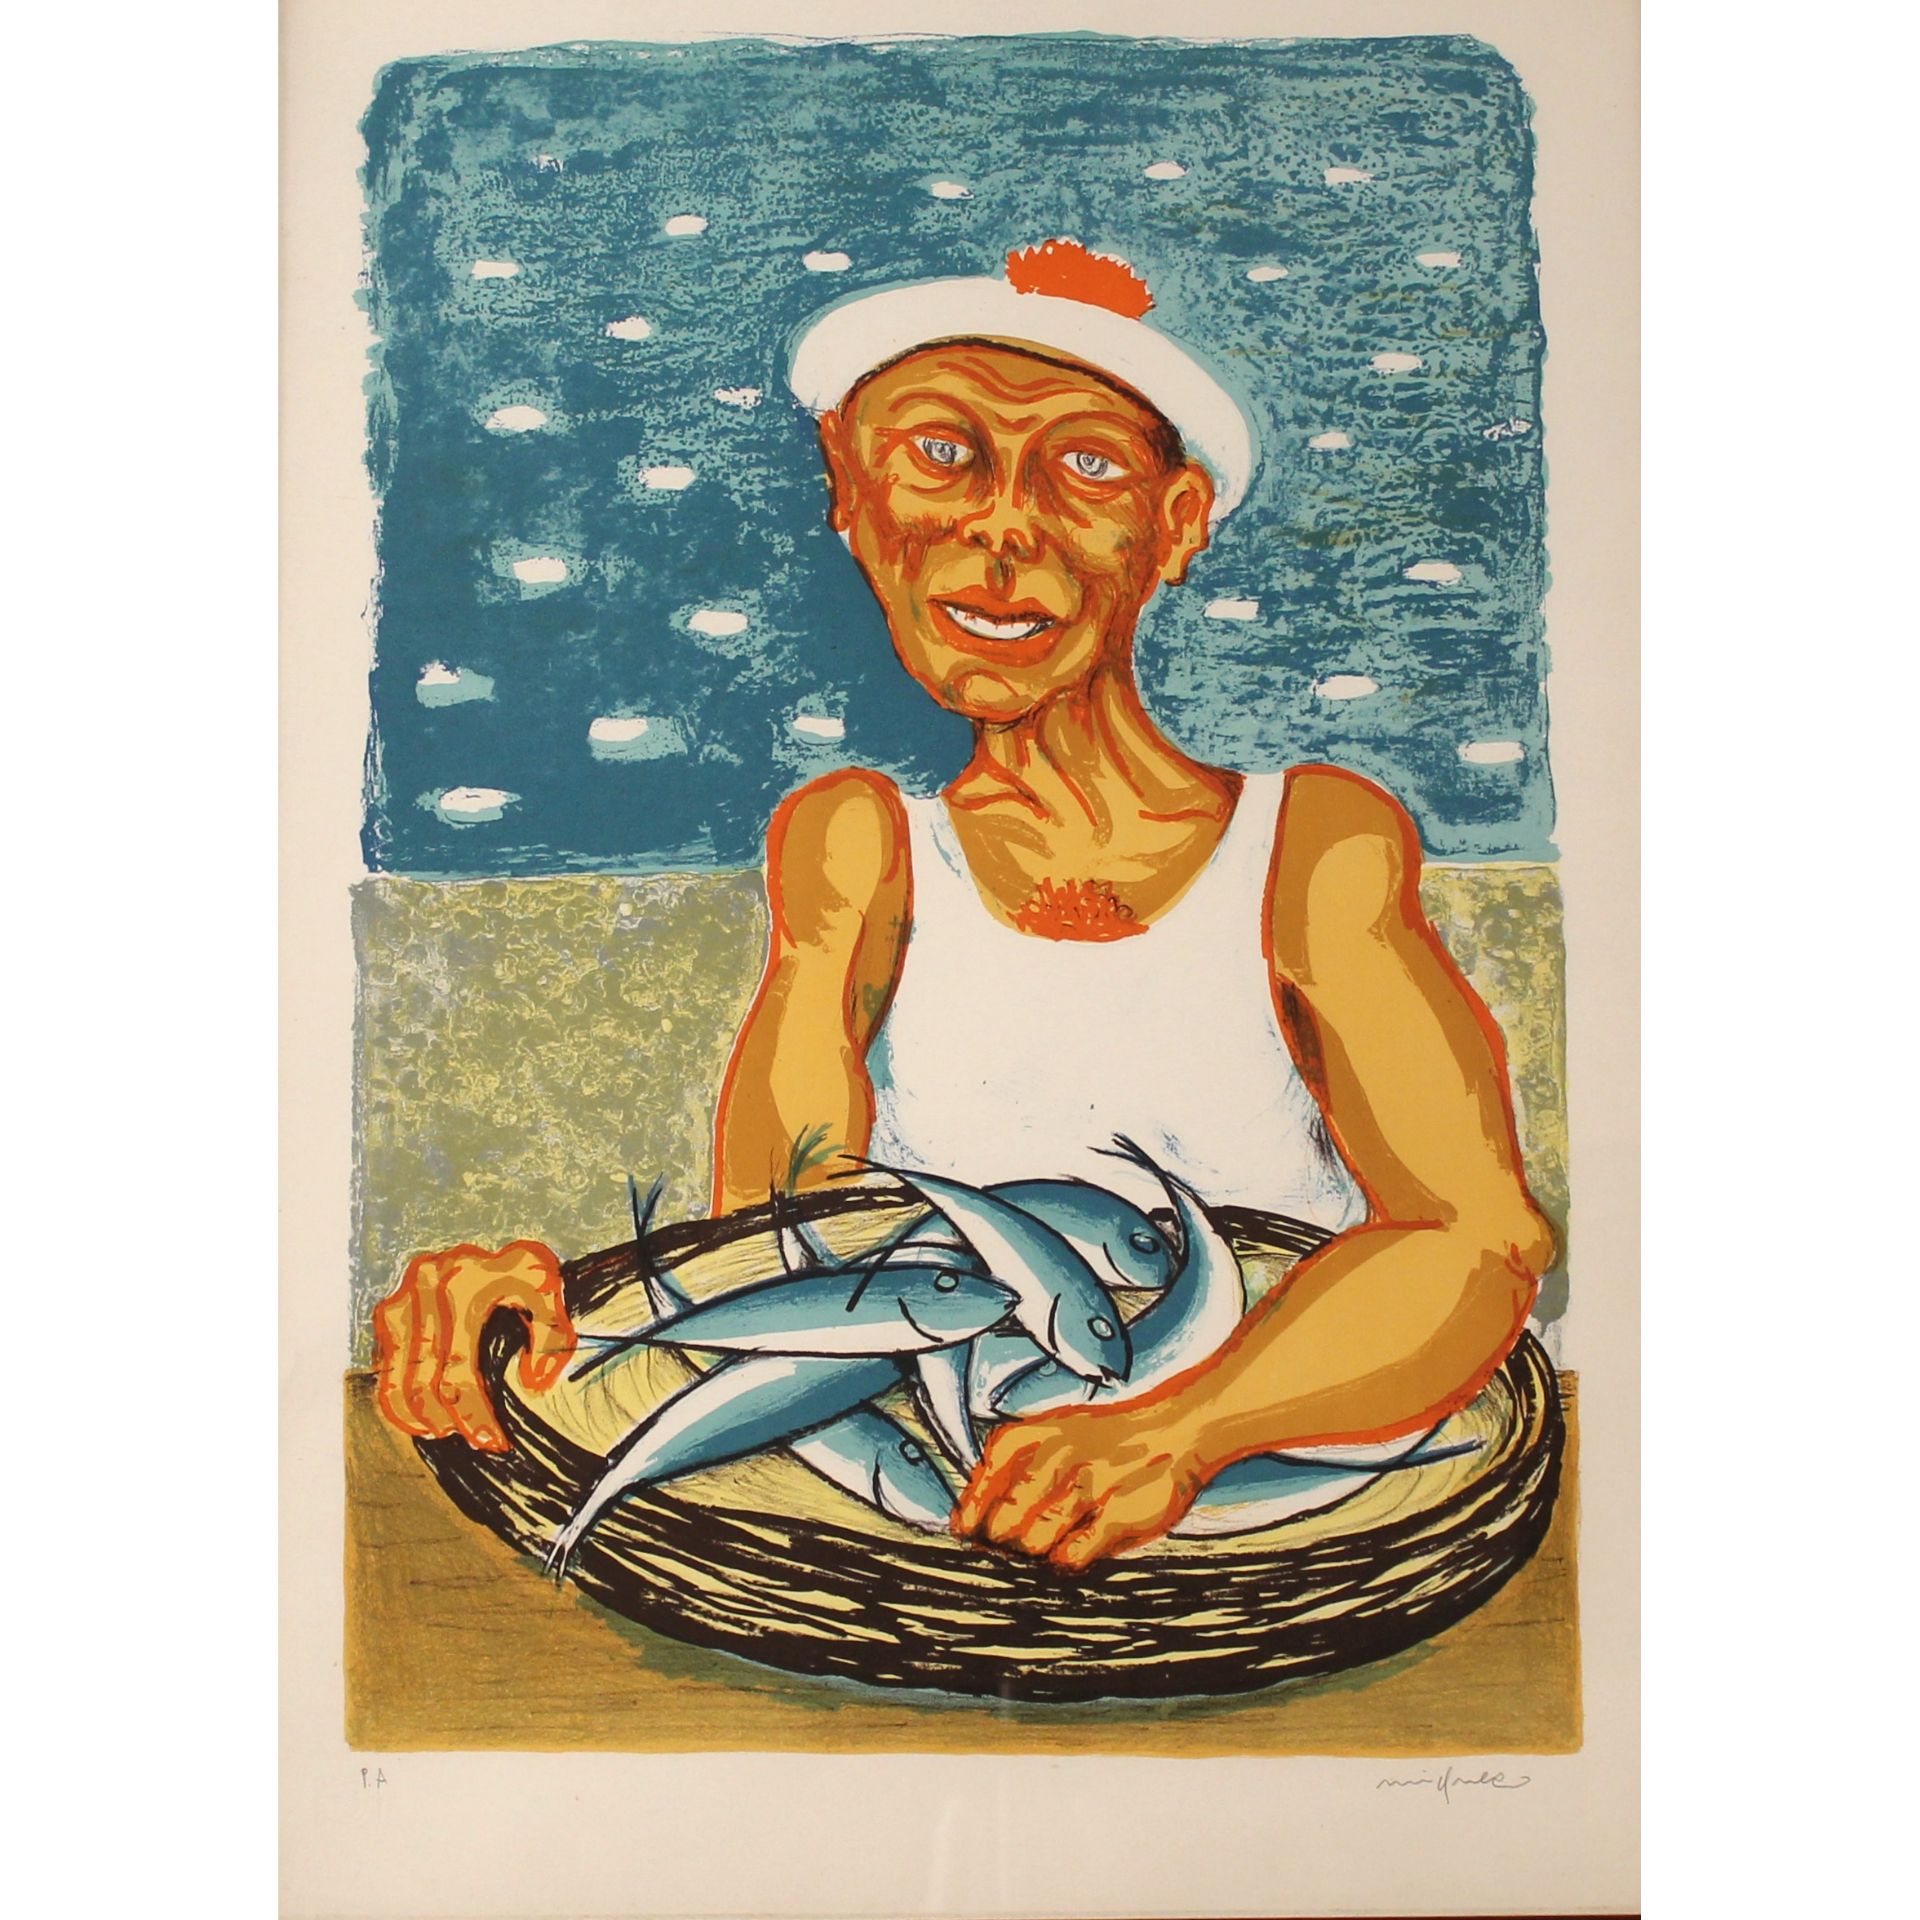 Giuseppe Migneco (1908/1997) "Venditore di pesce" - "Fish Seller"